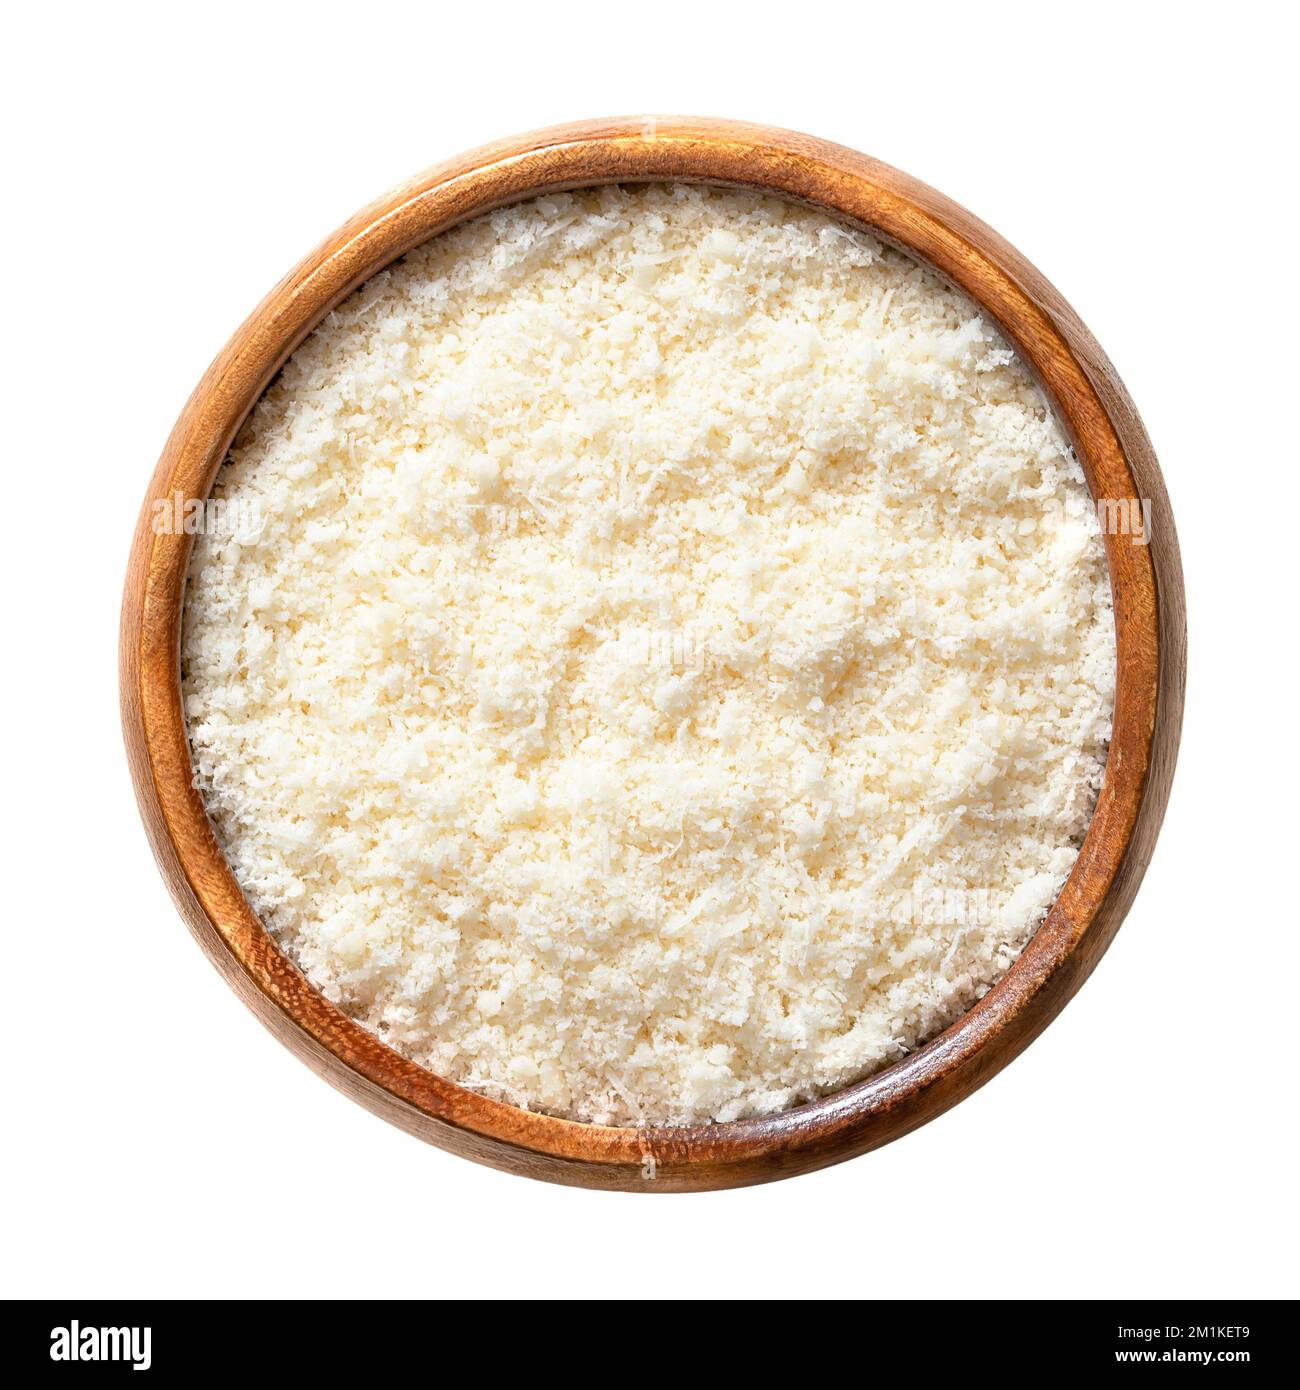 Geriebener Grana Padano Käse in einer Holzschüssel. Italienischer Hartkäse, ähnlich wie Parmesan, mit kräftigem herzhaftem Geschmack und leicht grober Textur. Stockfoto